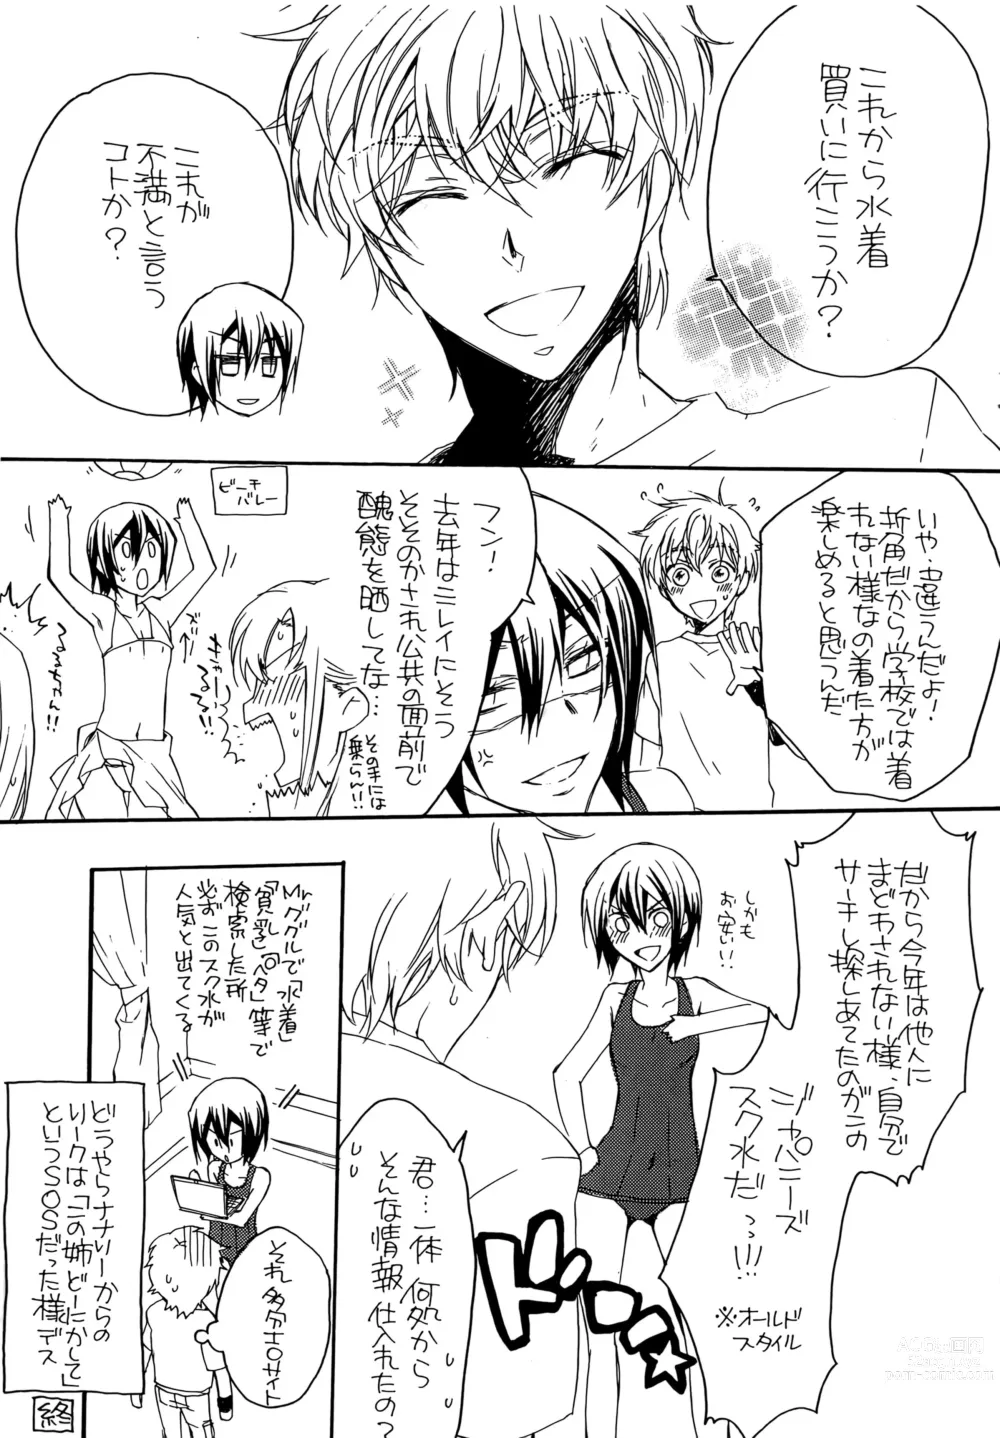 Page 6 of doujinshi Natsu Nyota Side Peta.